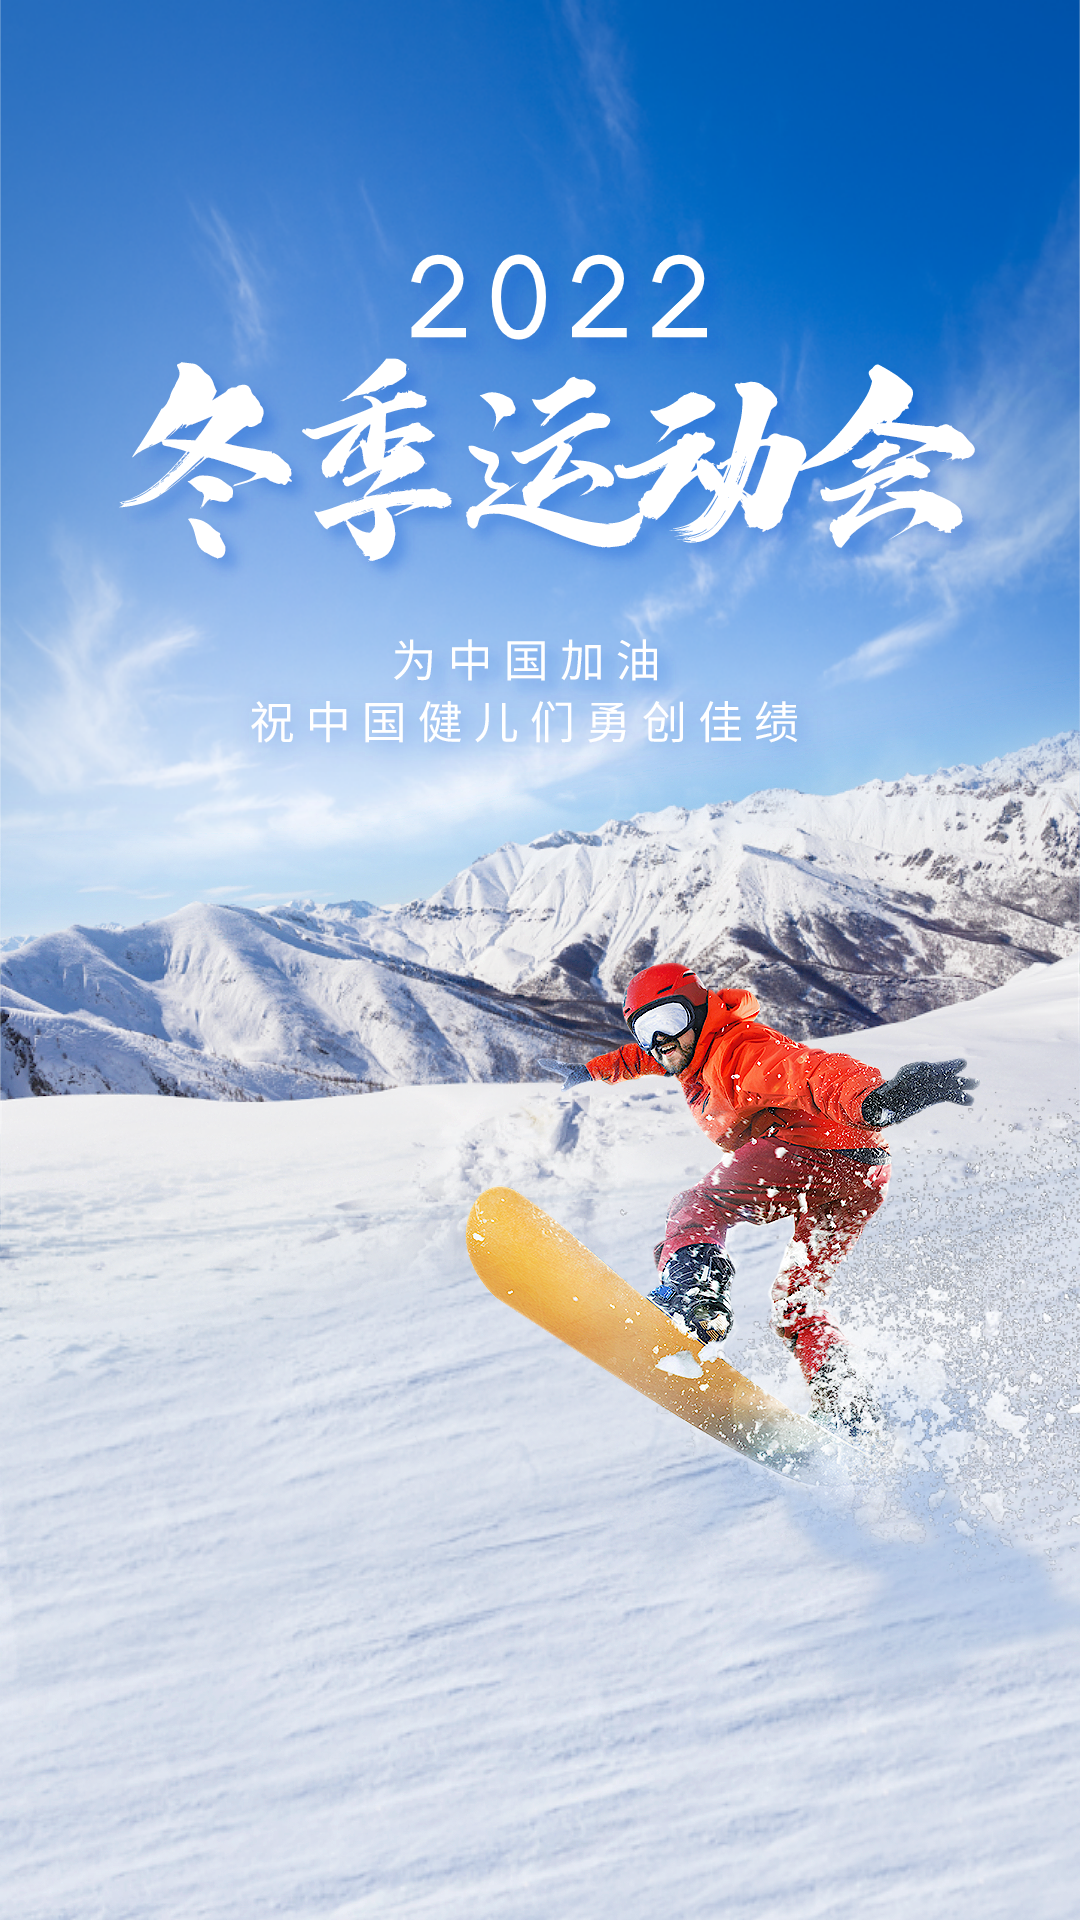 北京冬奥会文案图片